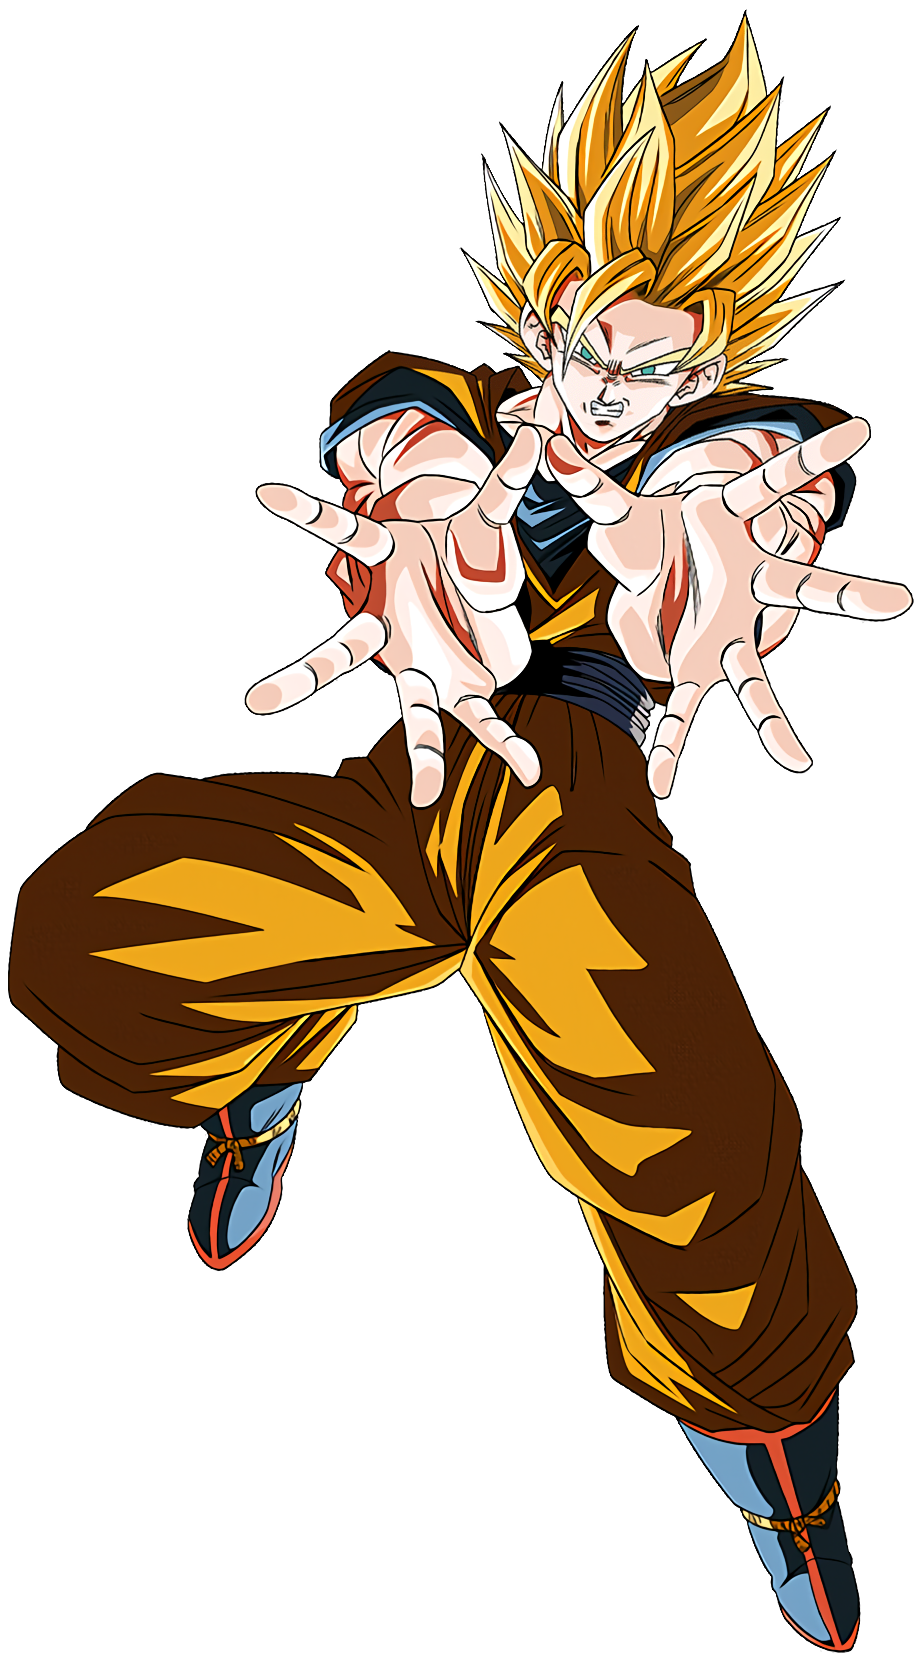 Goku Super Saiyan 2 and Vegeta Super Saiyan 2 by crismarshall on DeviantArt